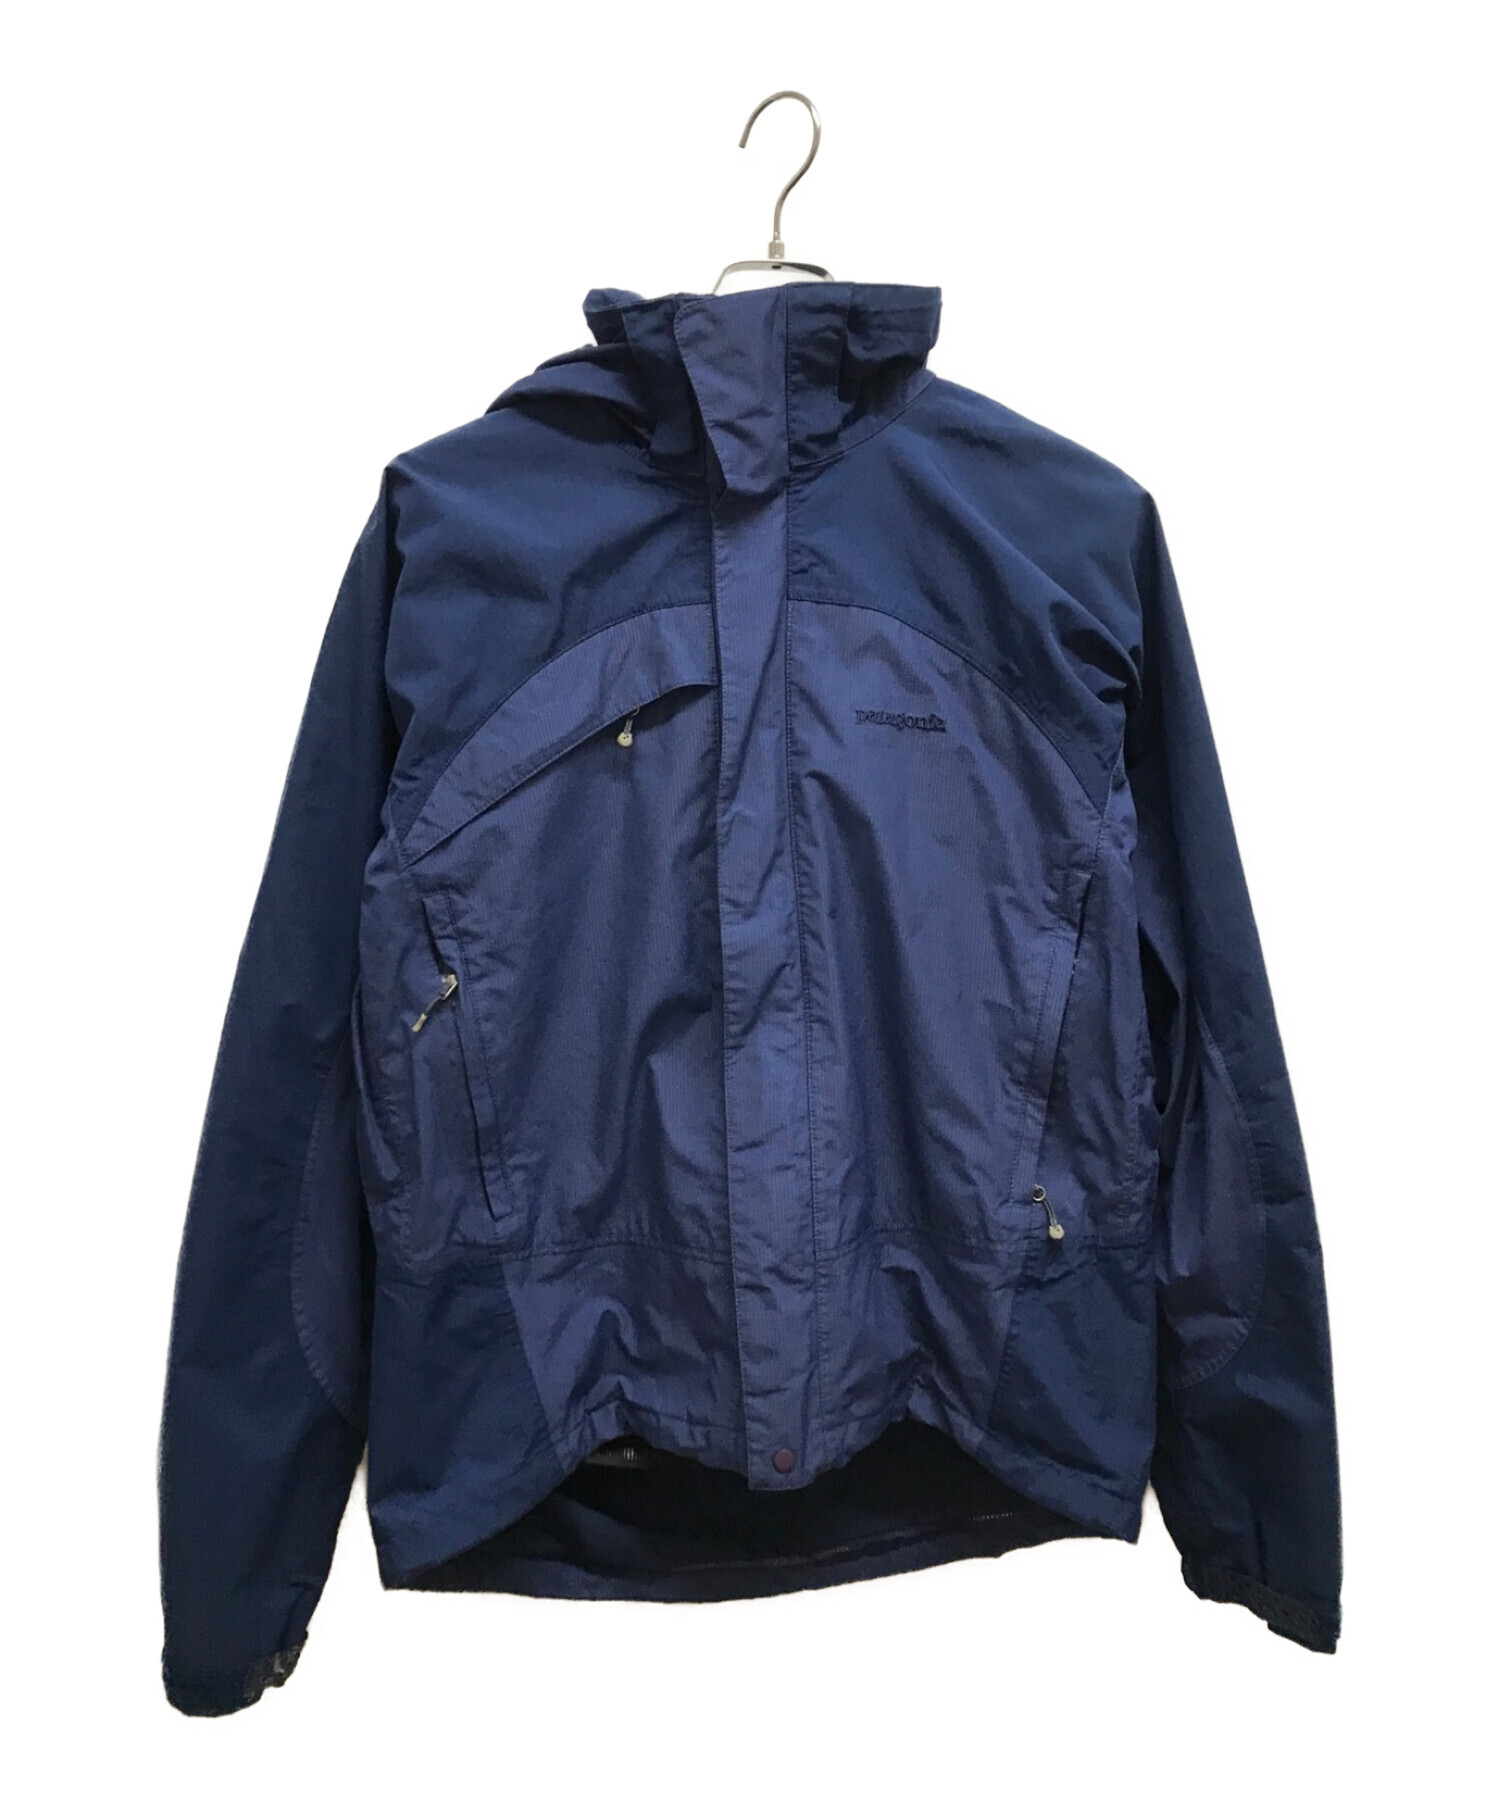 Patagonia (パタゴニア) プリモゴアテックスジャケット ネイビー サイズ:S